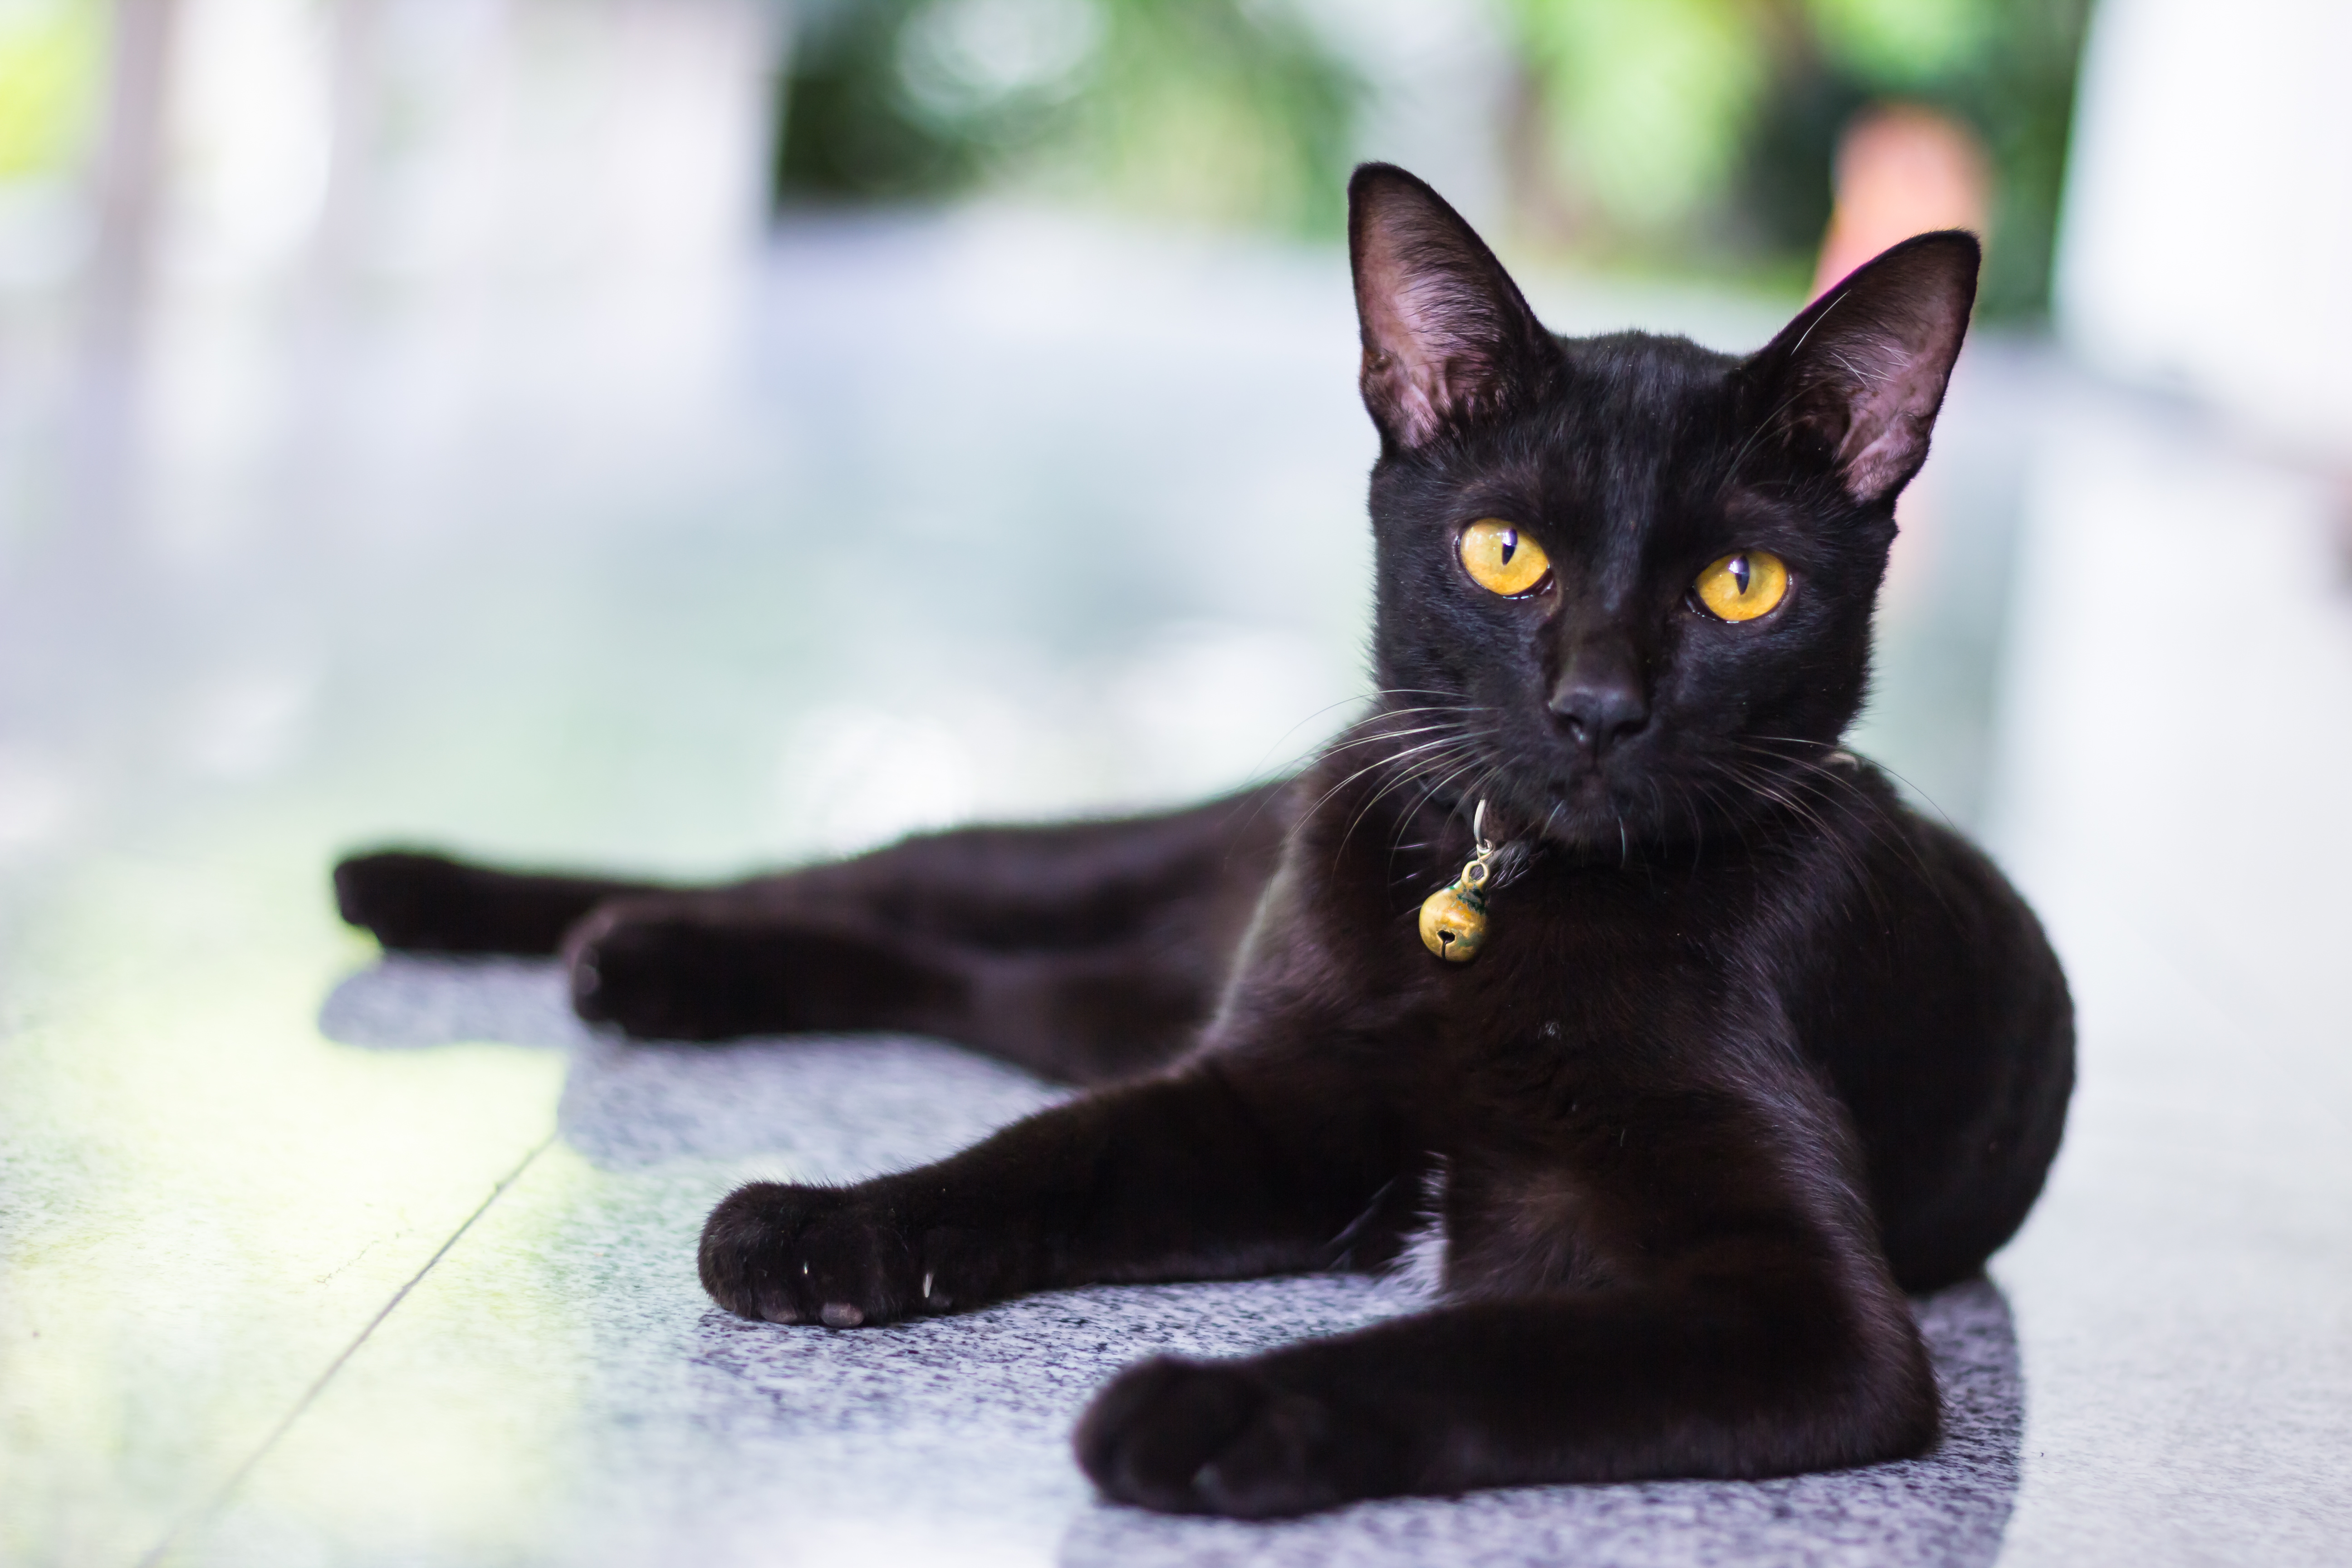 Порода черной кошки с желтыми глазами. Бомбейская кошка. Бомбейская черная кошка. Чёрная кошка порода Бомбейская. Порода кошек Бомбейская кошка.